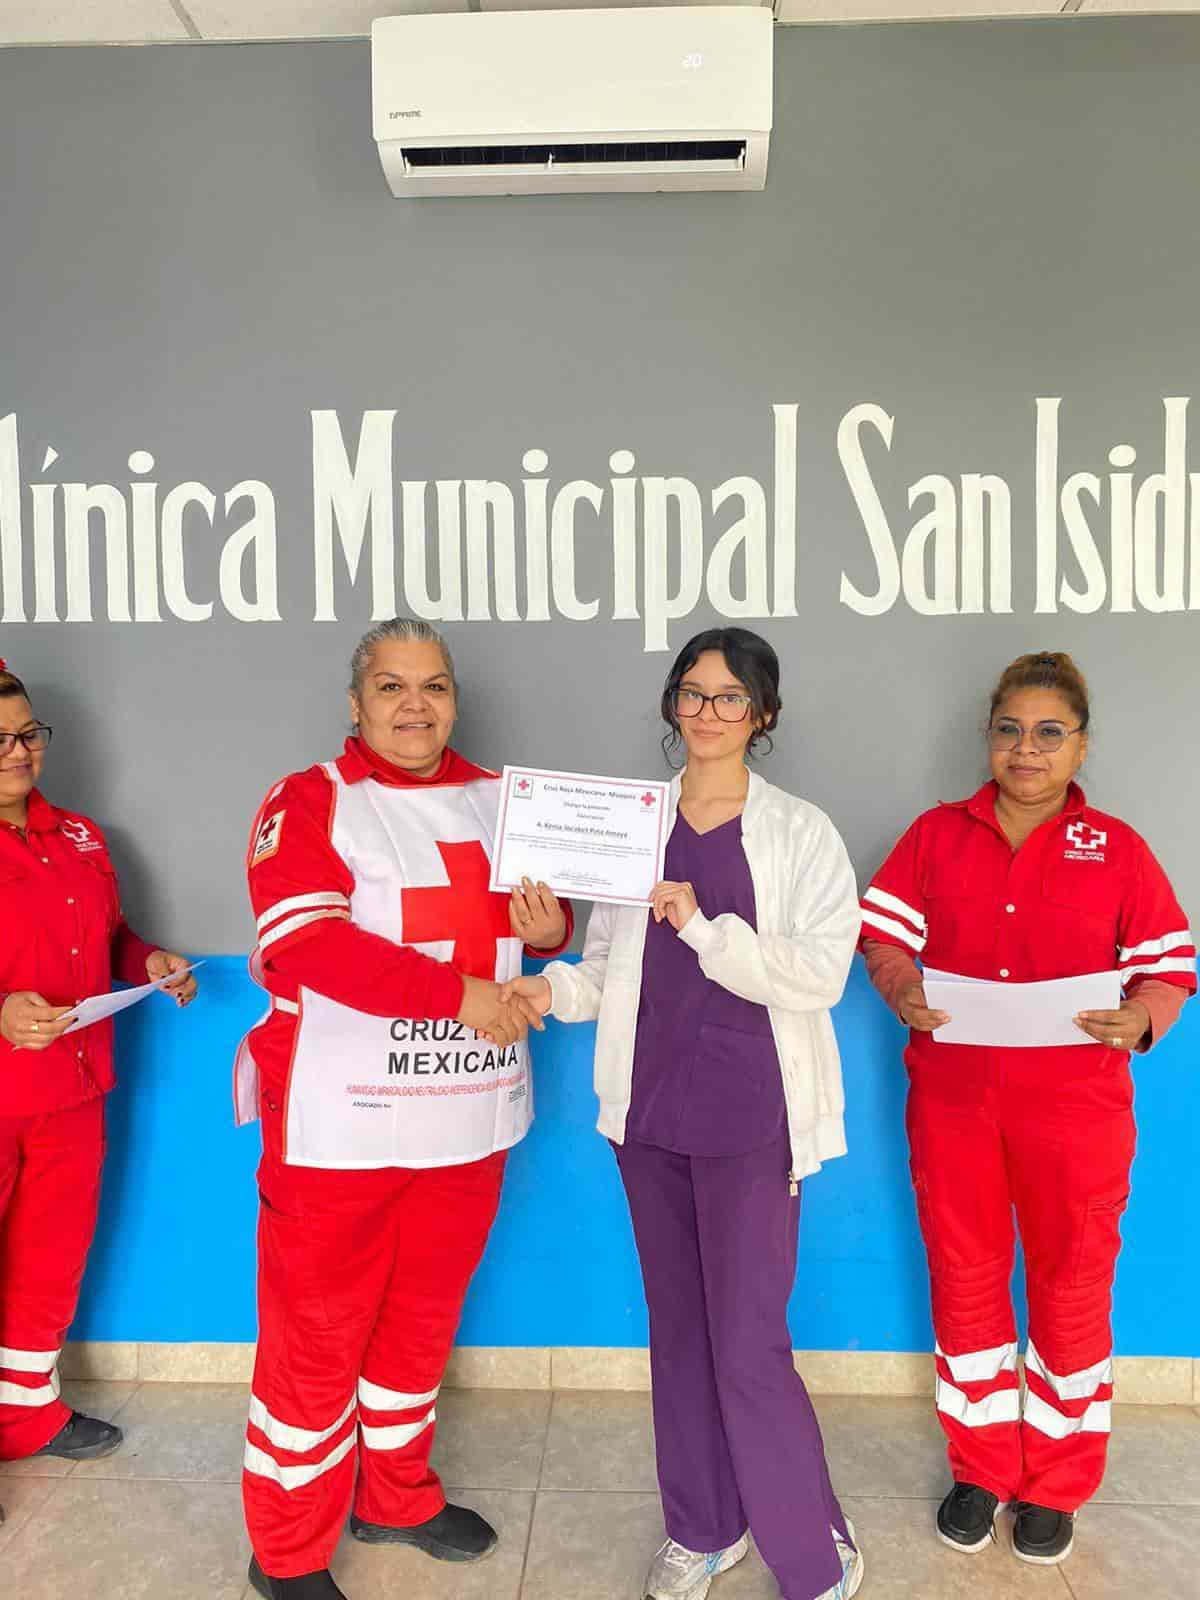 Imparten curso de primeros auxilios en Clínica San Isidro